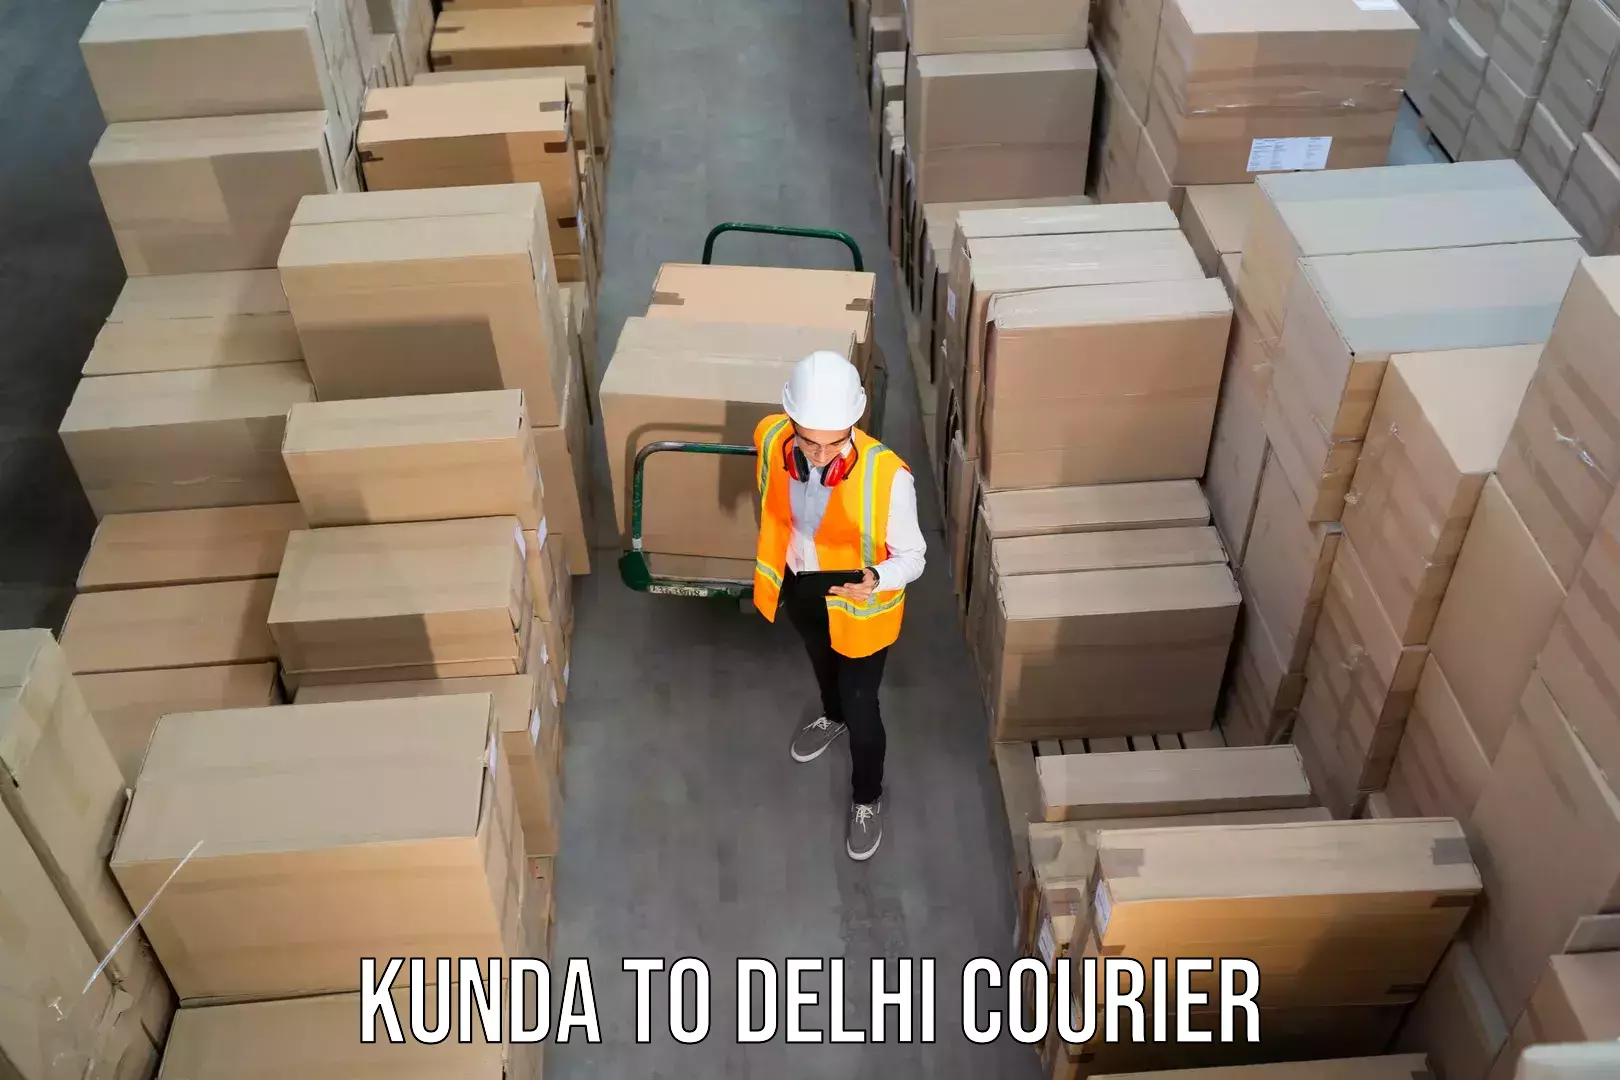 Express logistics service Kunda to East Delhi